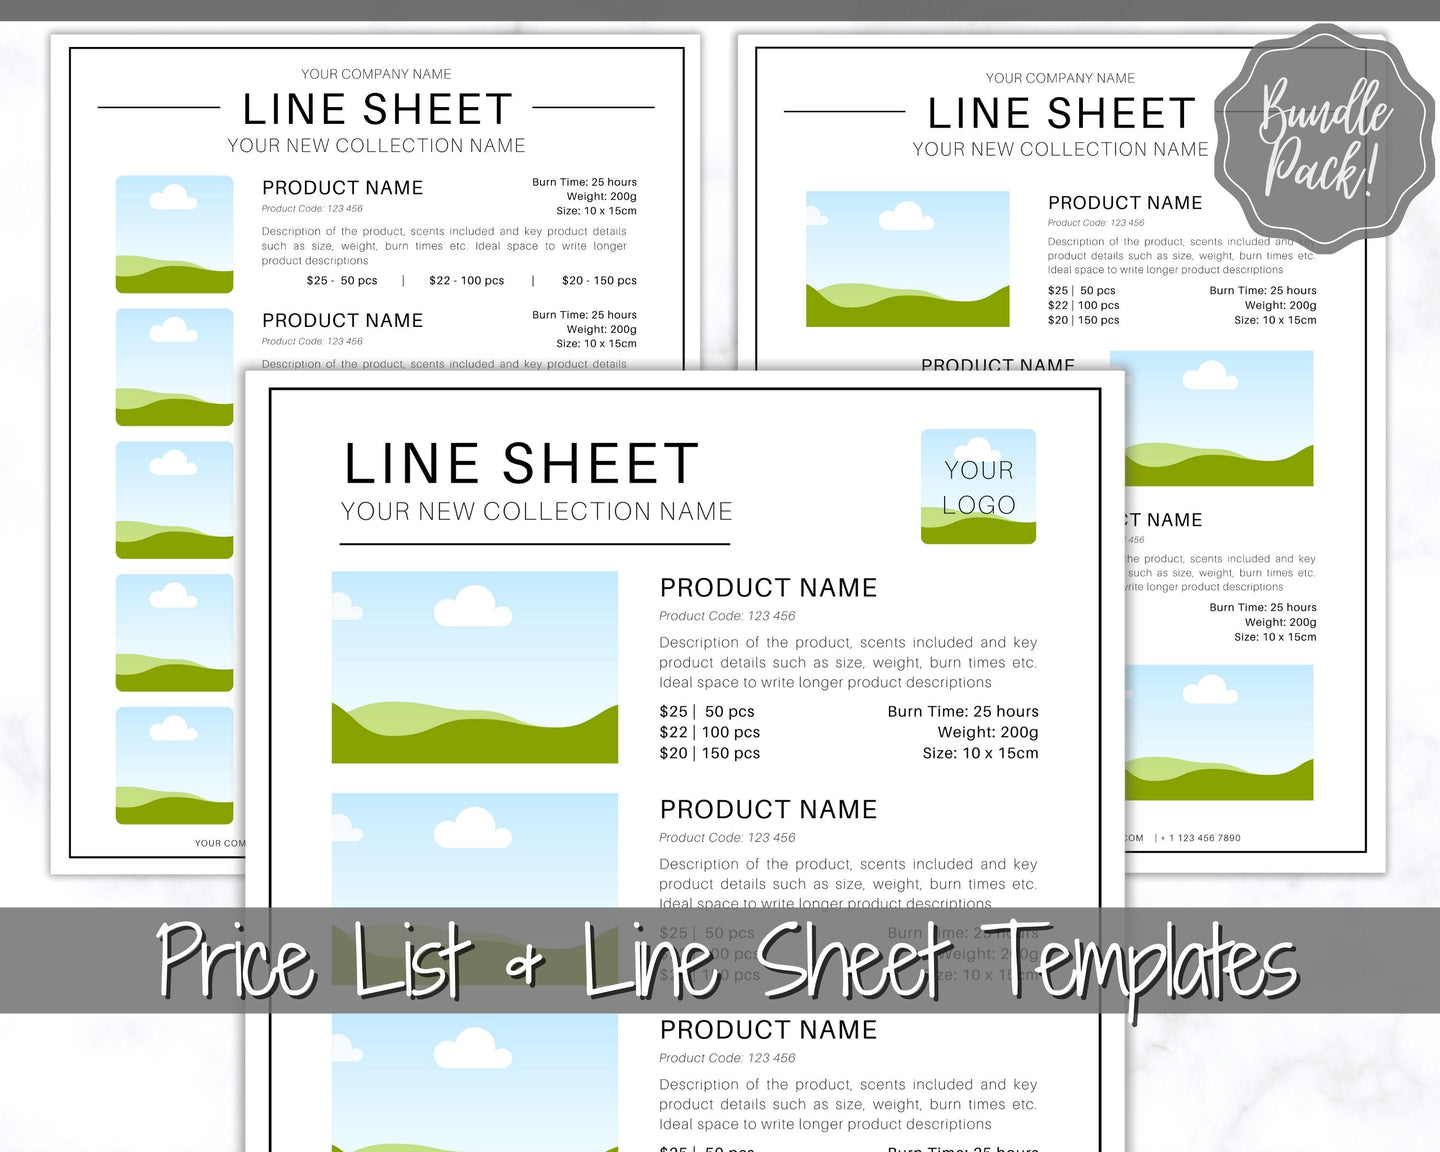 Line Sheet Template, Wholesale Catalog, Editable Wholesale Template, Product Sales Sheet, Price List Template, Canva Linesheet Catalogue | Mono Style 1